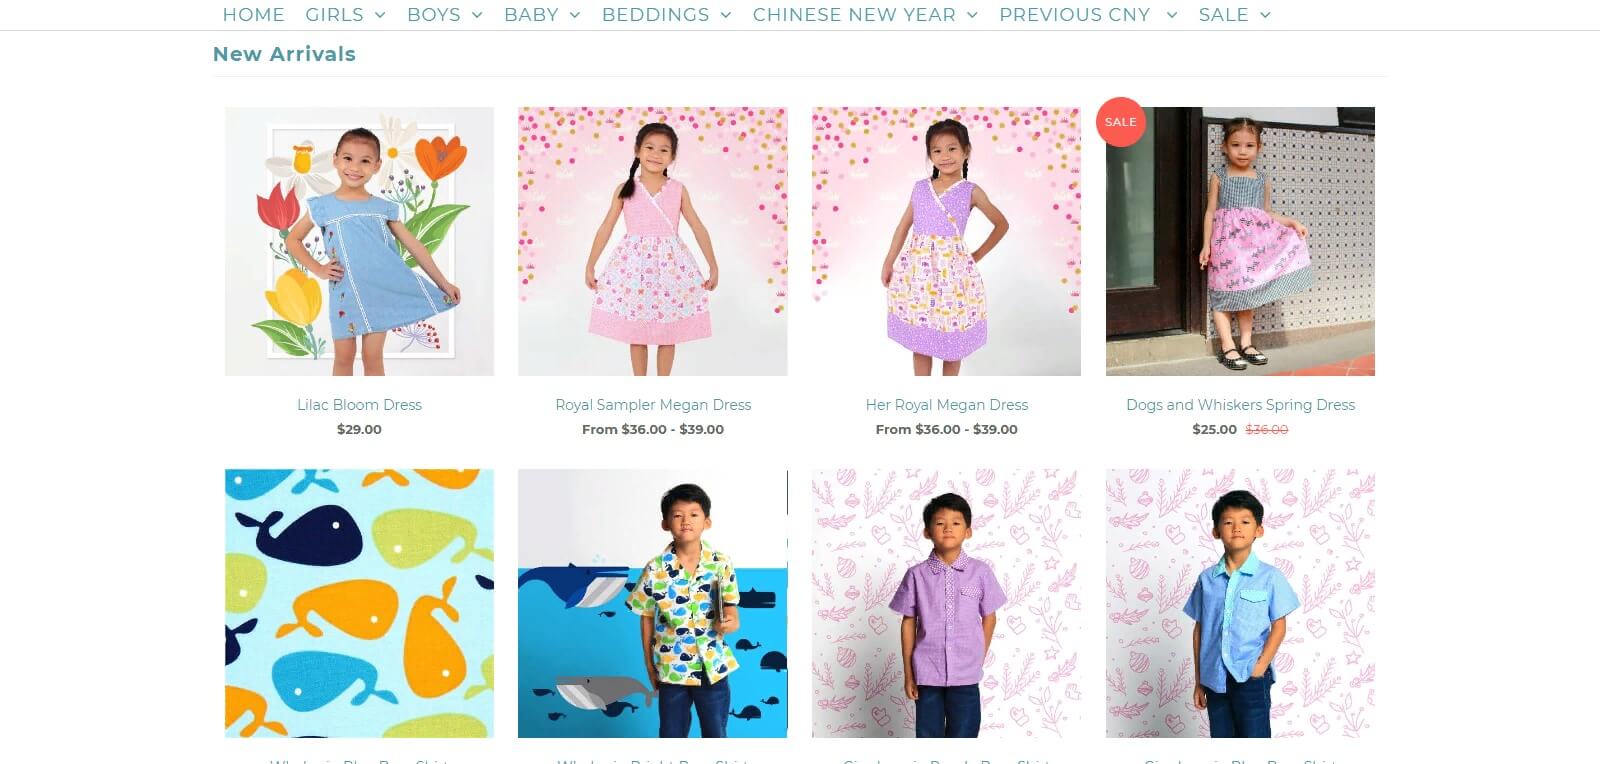 Thiết kế website bán hàng quần áo trẻ em, tăng lợi thế cạnh tranh